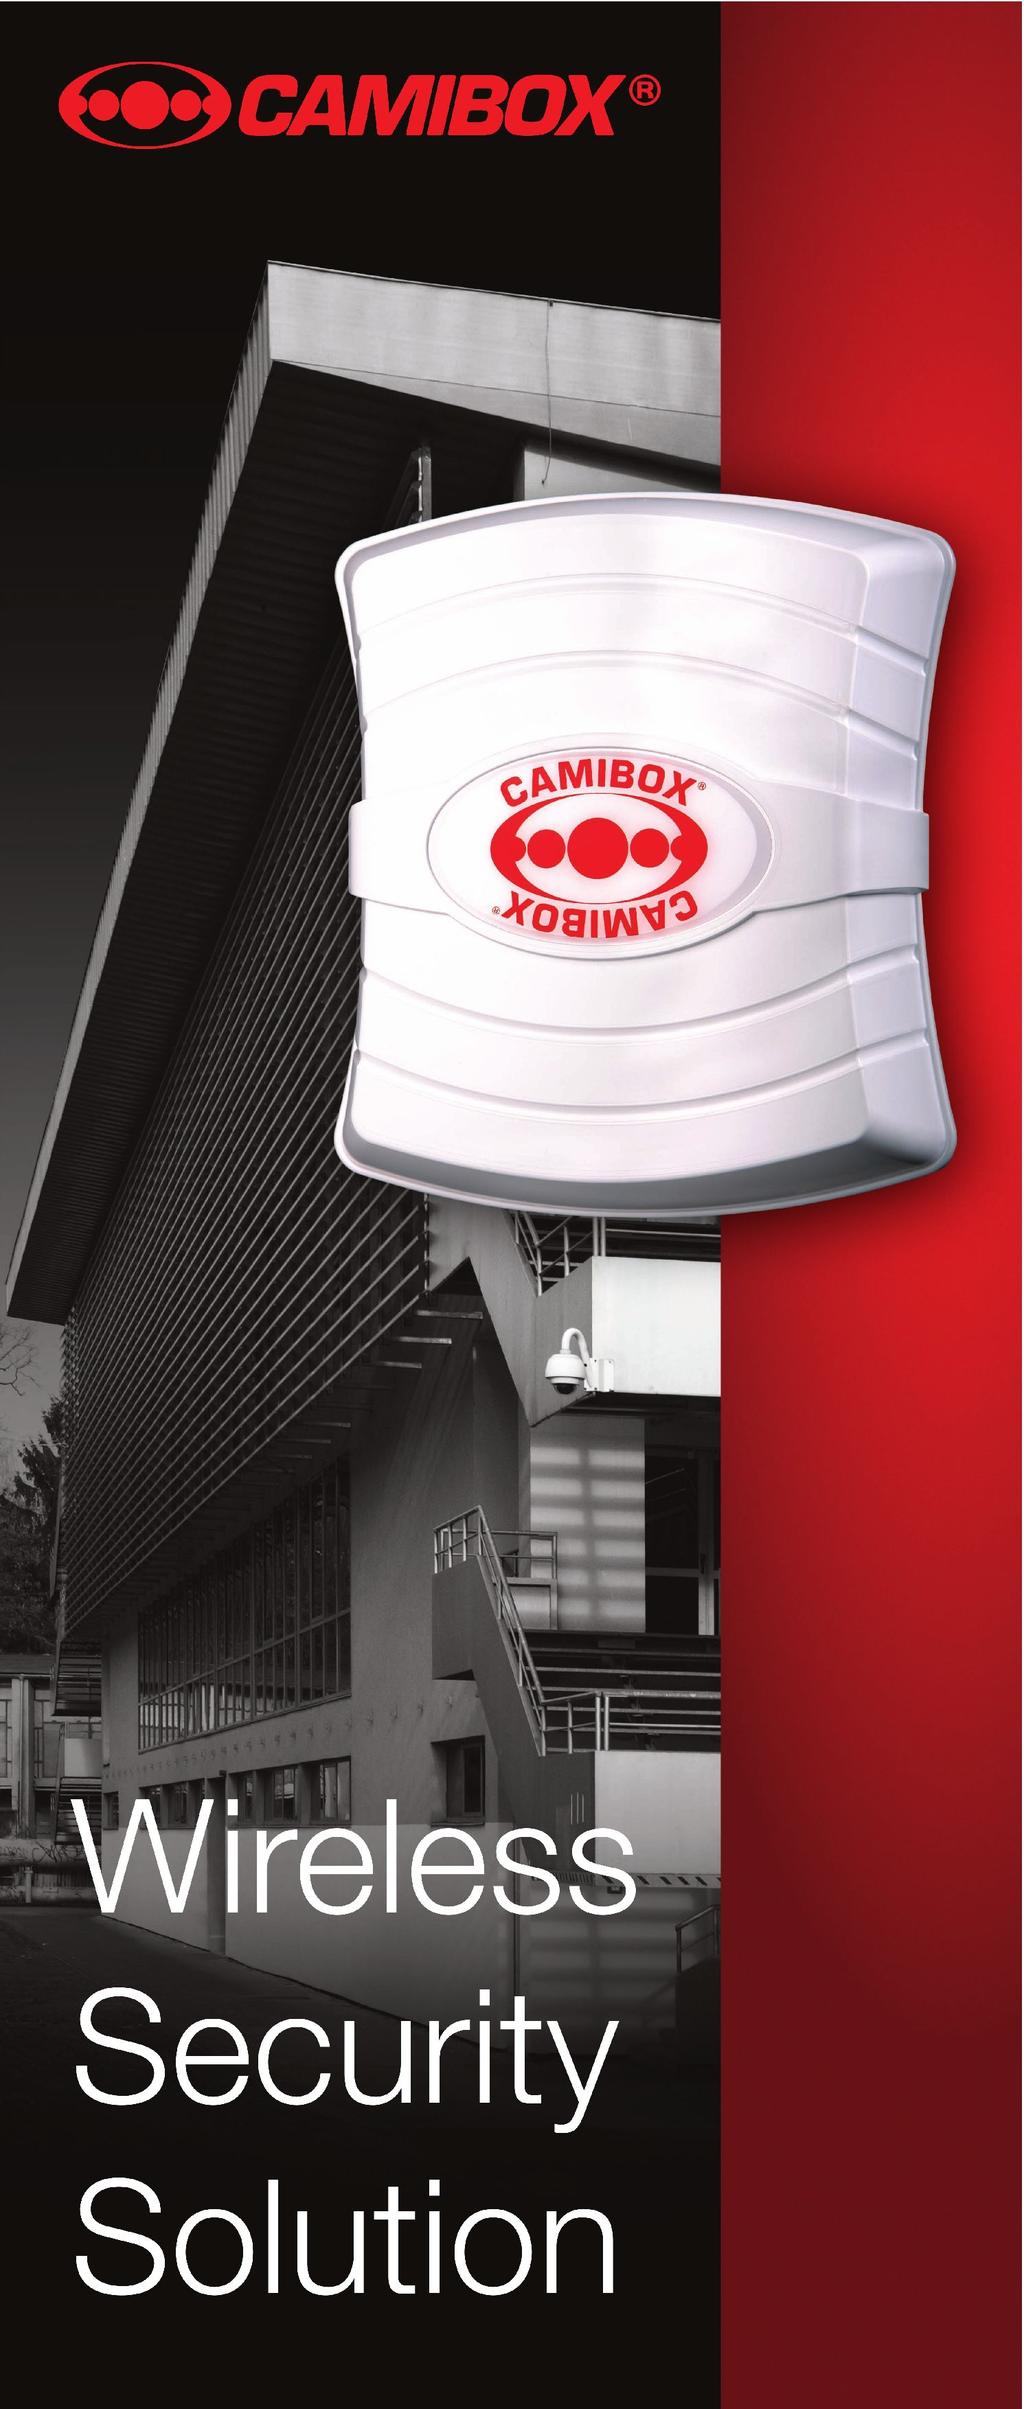 CAMIBOX è un sistema professionale, con soluzione modulare, per il trasferimento in wireless - in banda